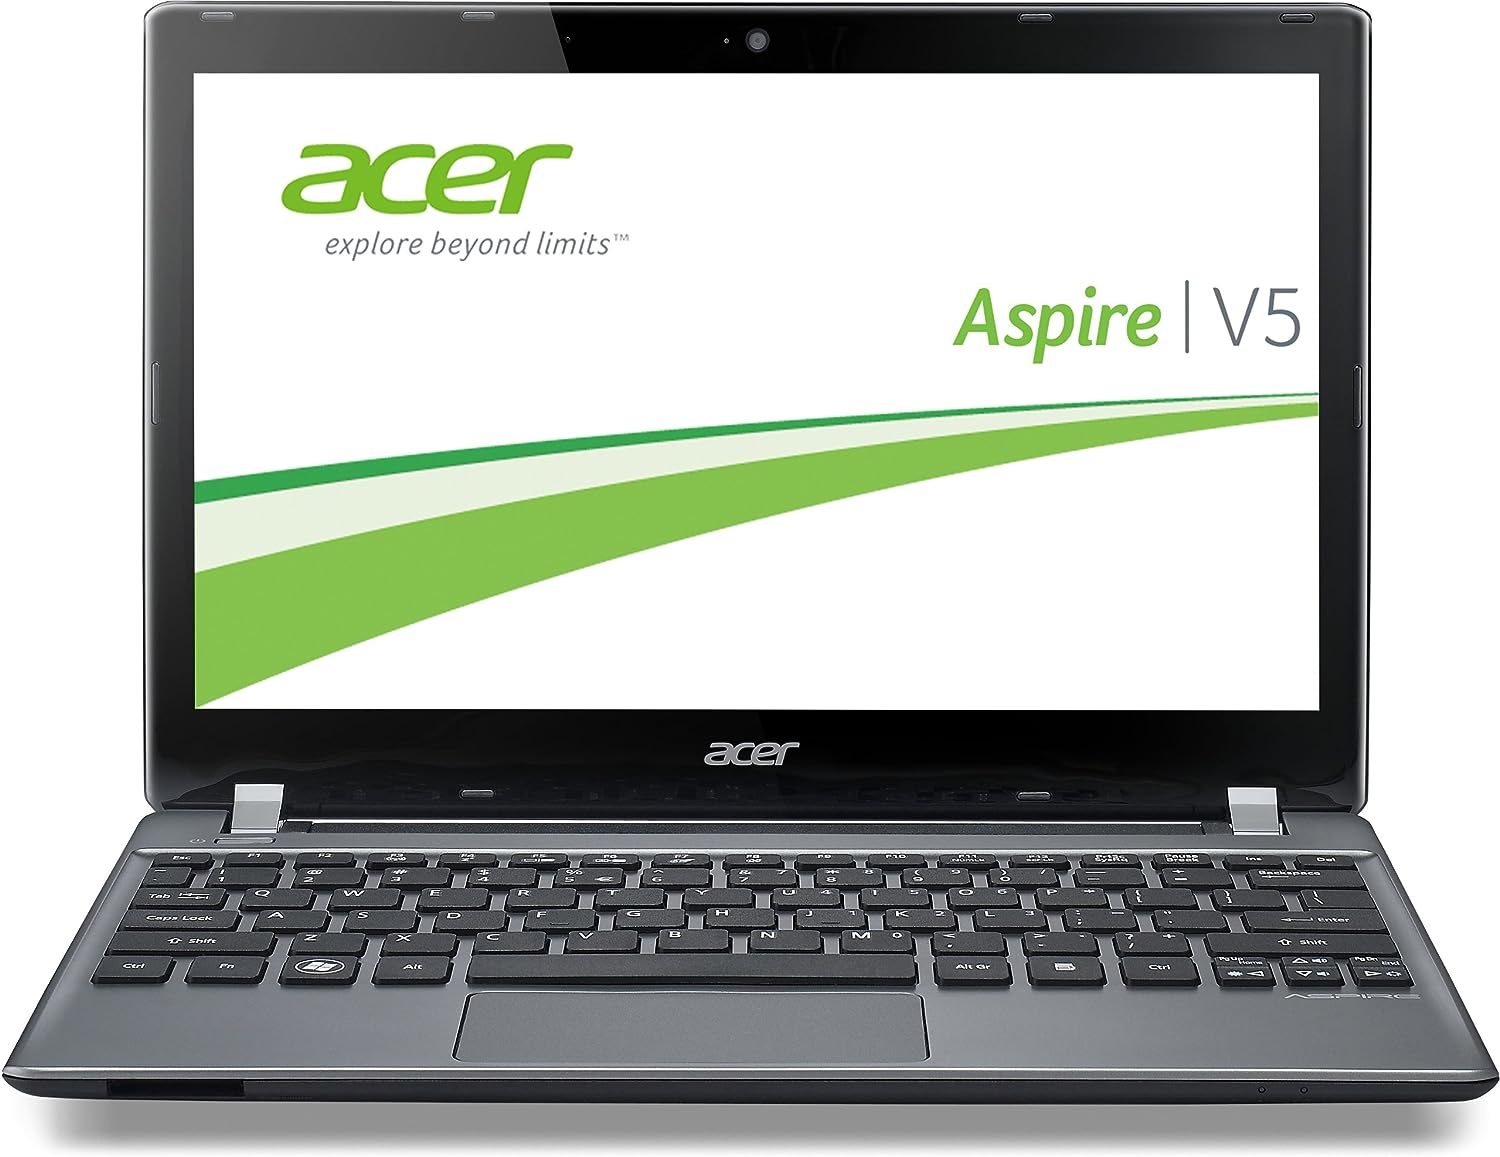 Acer Aspire V5-552G Notebook